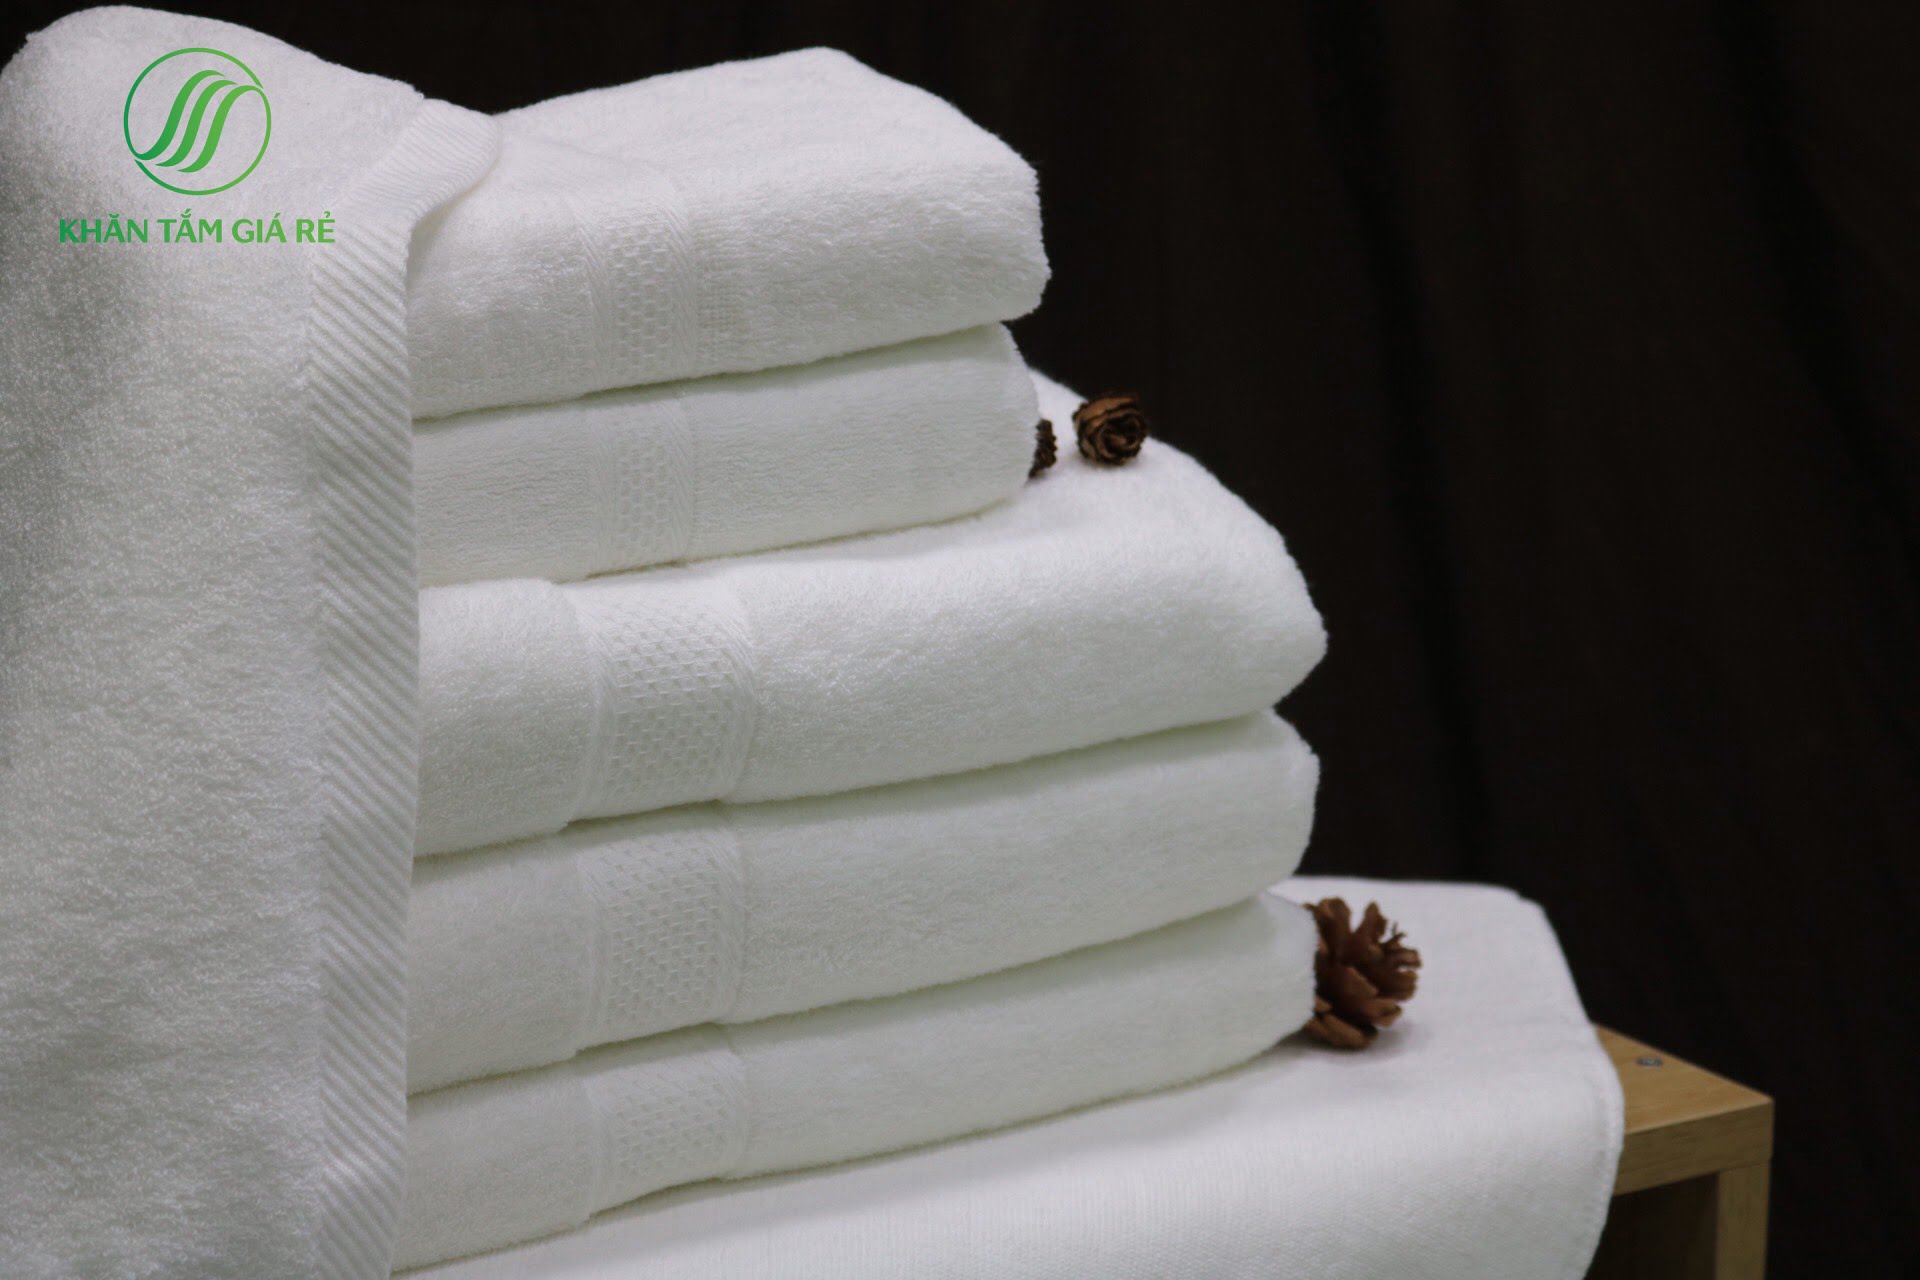 Khăn tắm khách sạn cao cấp là vật dụng dùng để lau khô người nên cần thấm hút nhanh và mềm mại